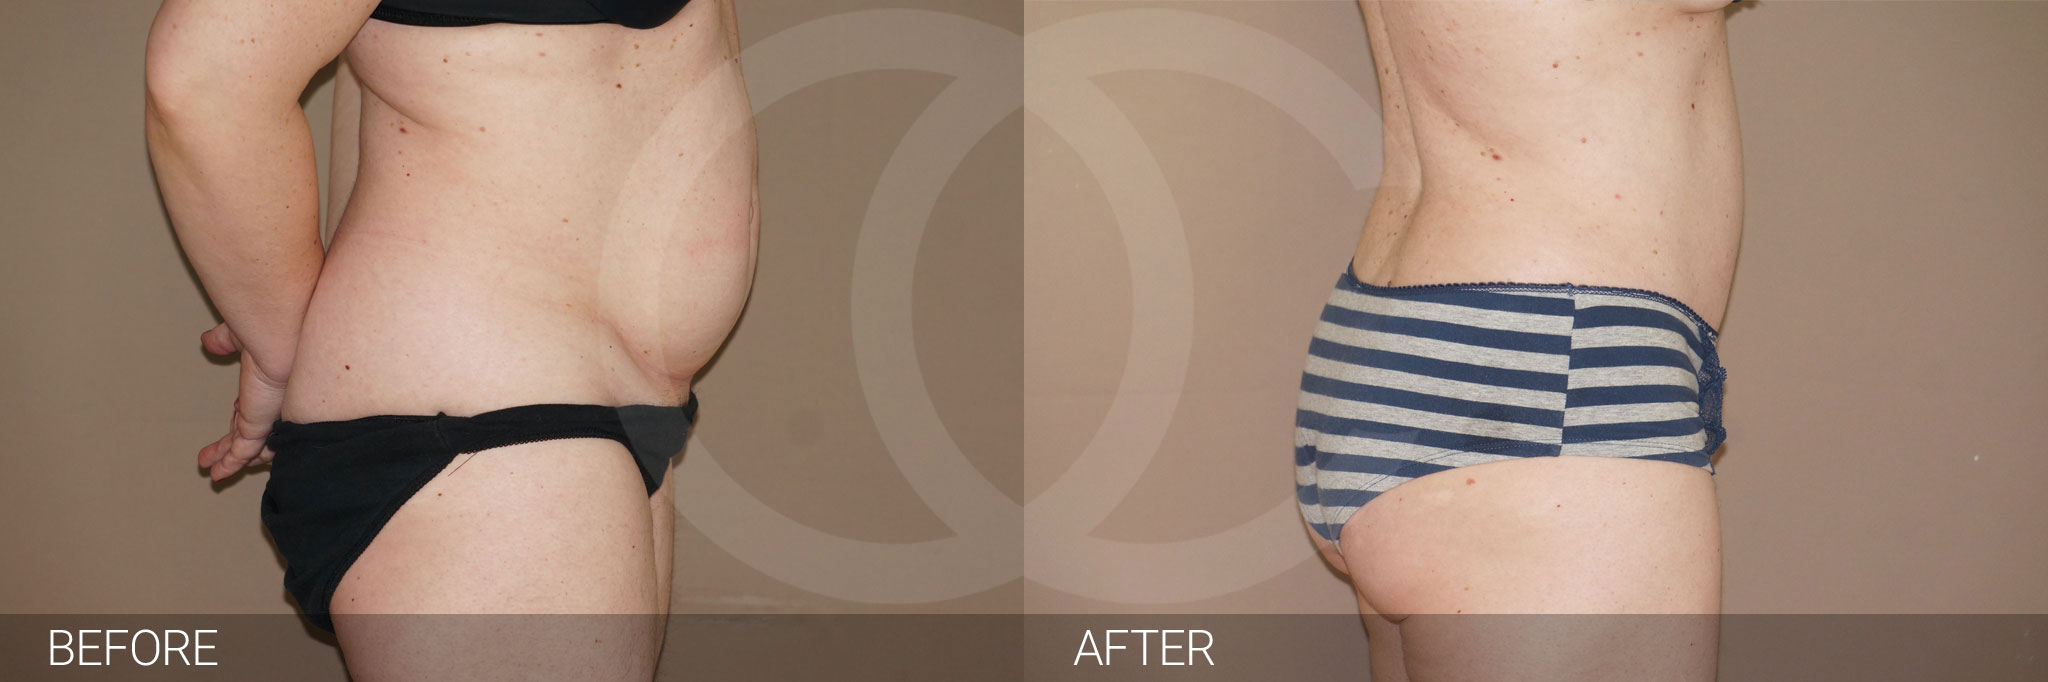 Antes y después Abdominoplastia con liposucción fotos reales de pacientes 7.3 | Ocean Clinic Marbella Madrid